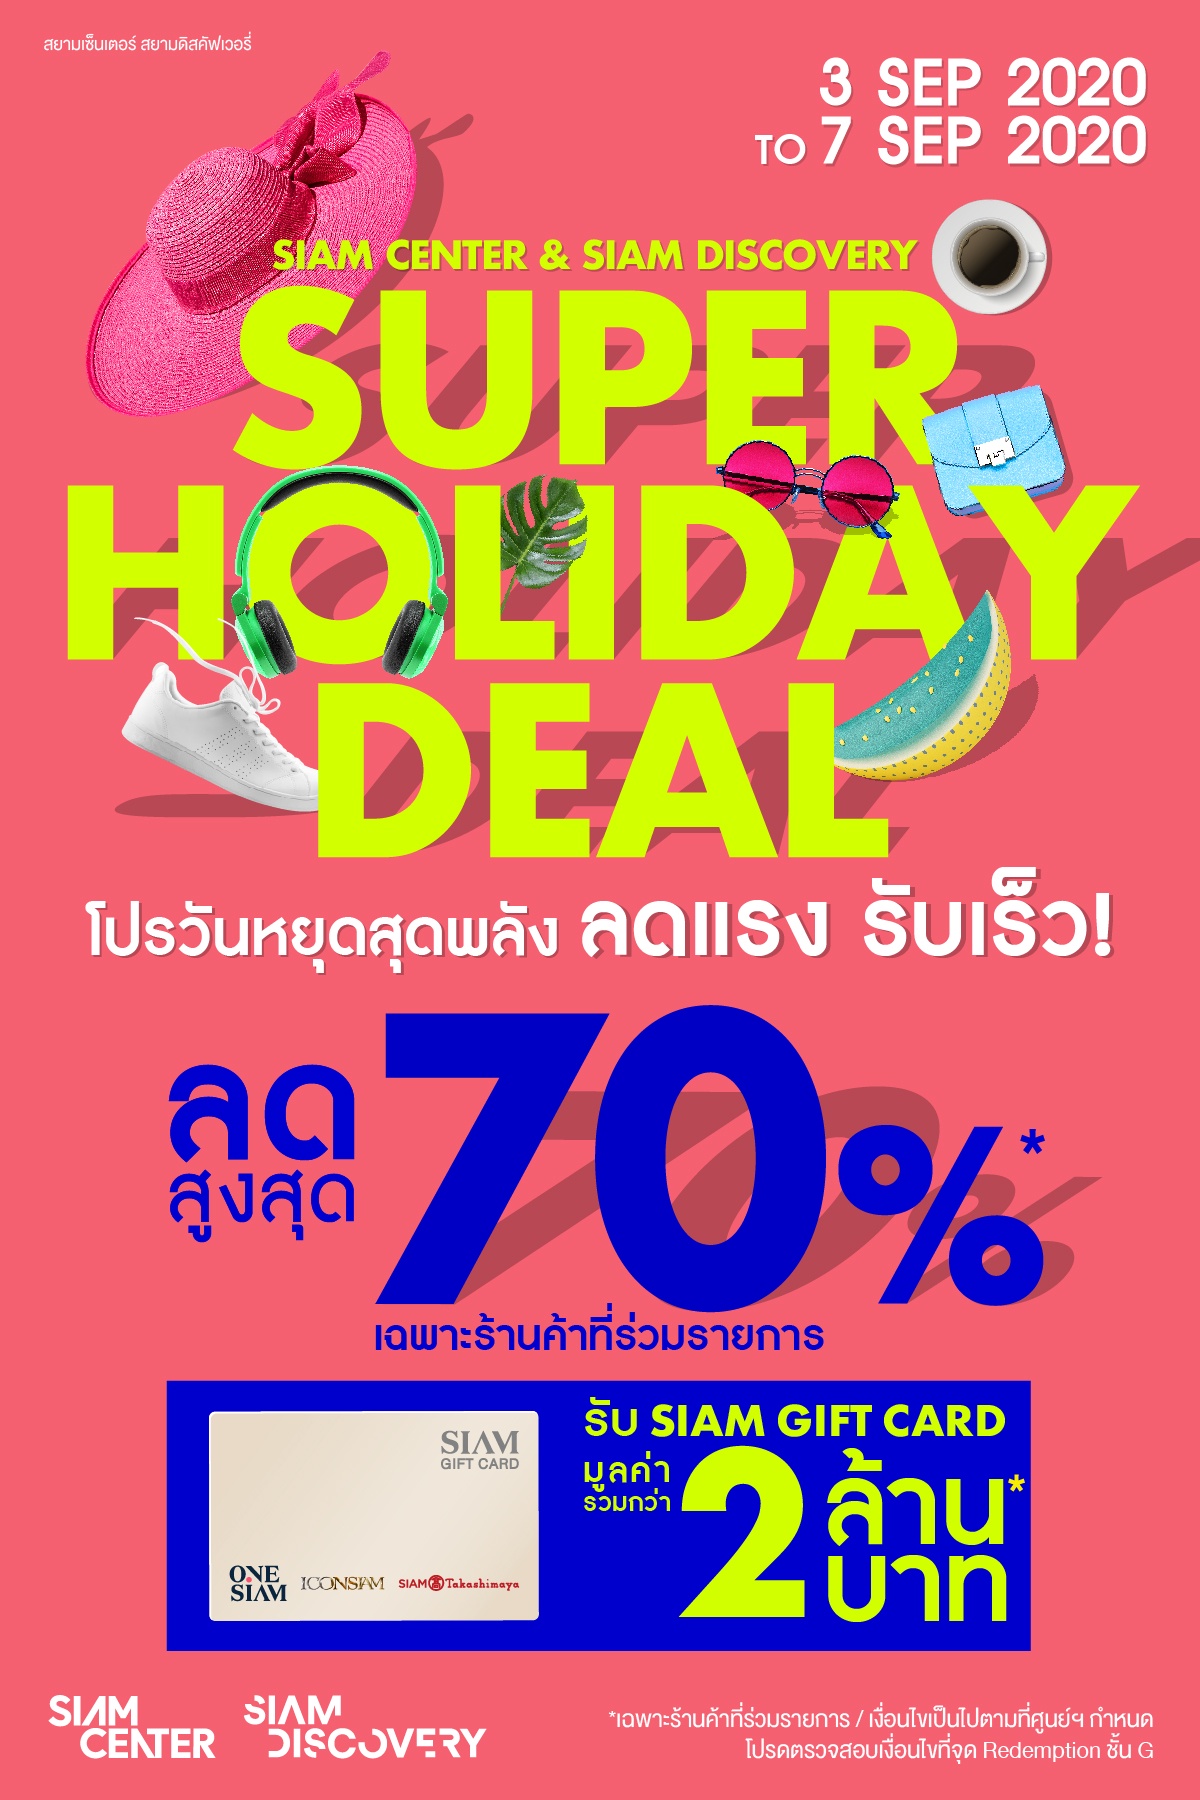 สยามเซ็นเตอร์ และสยามดิสคัฟเวอรี่ ชวนช้อปสนั่นฉลองวันหยุดยาว ลดสูงสุด 70% Siam Center Siam Discovery Super Holiday Deal